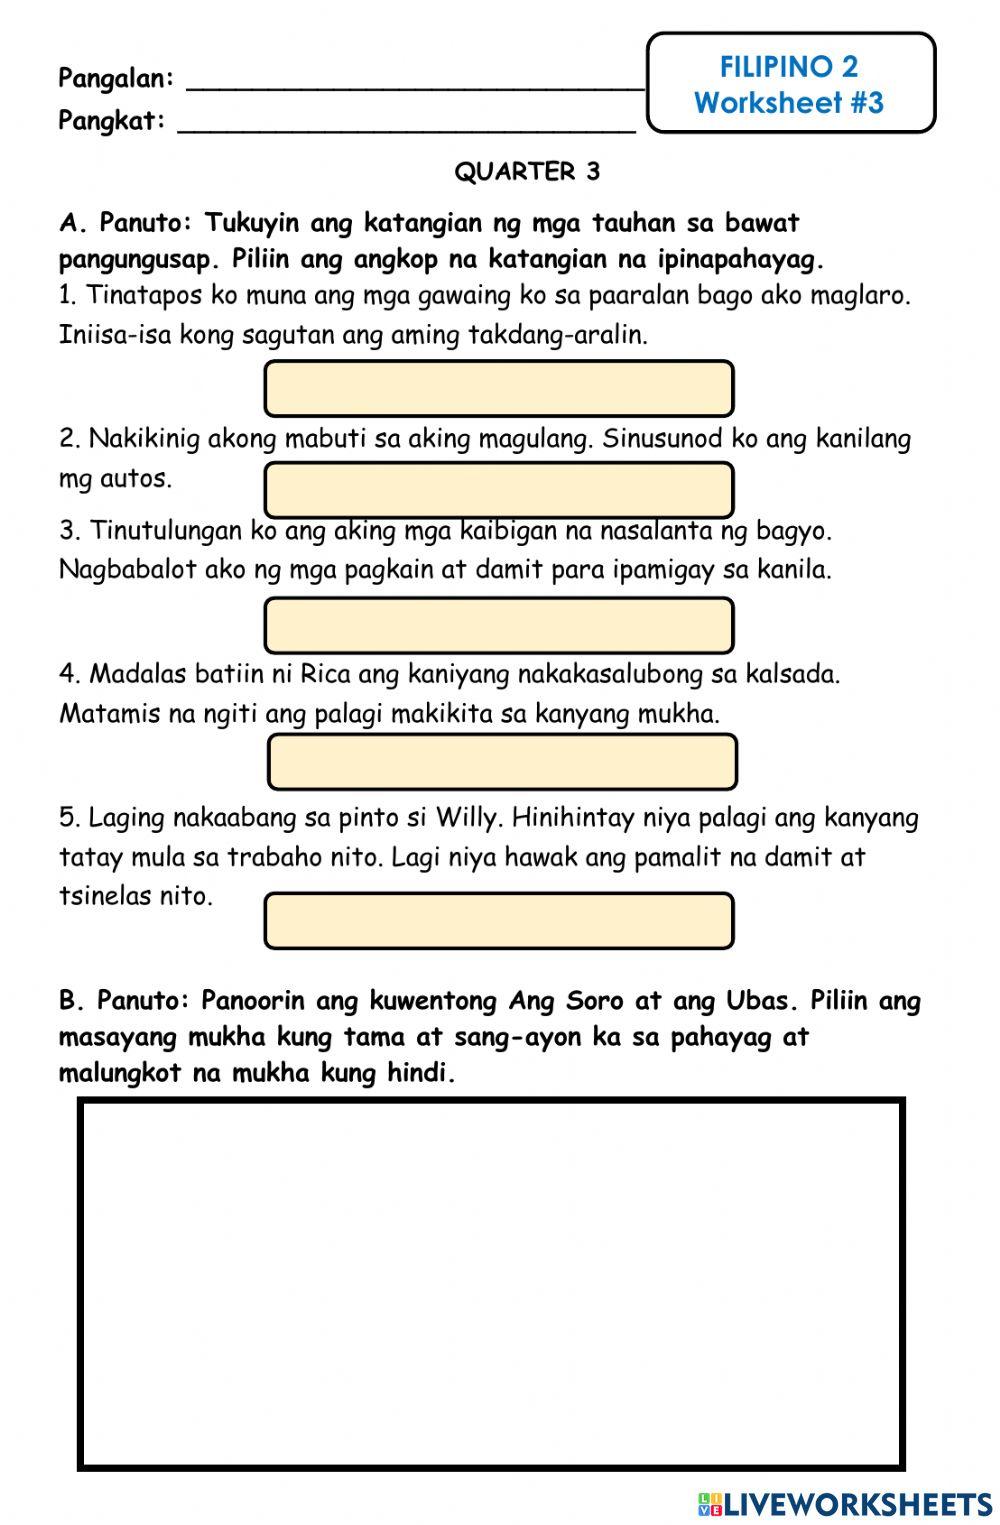 Filipino Worksheet -3